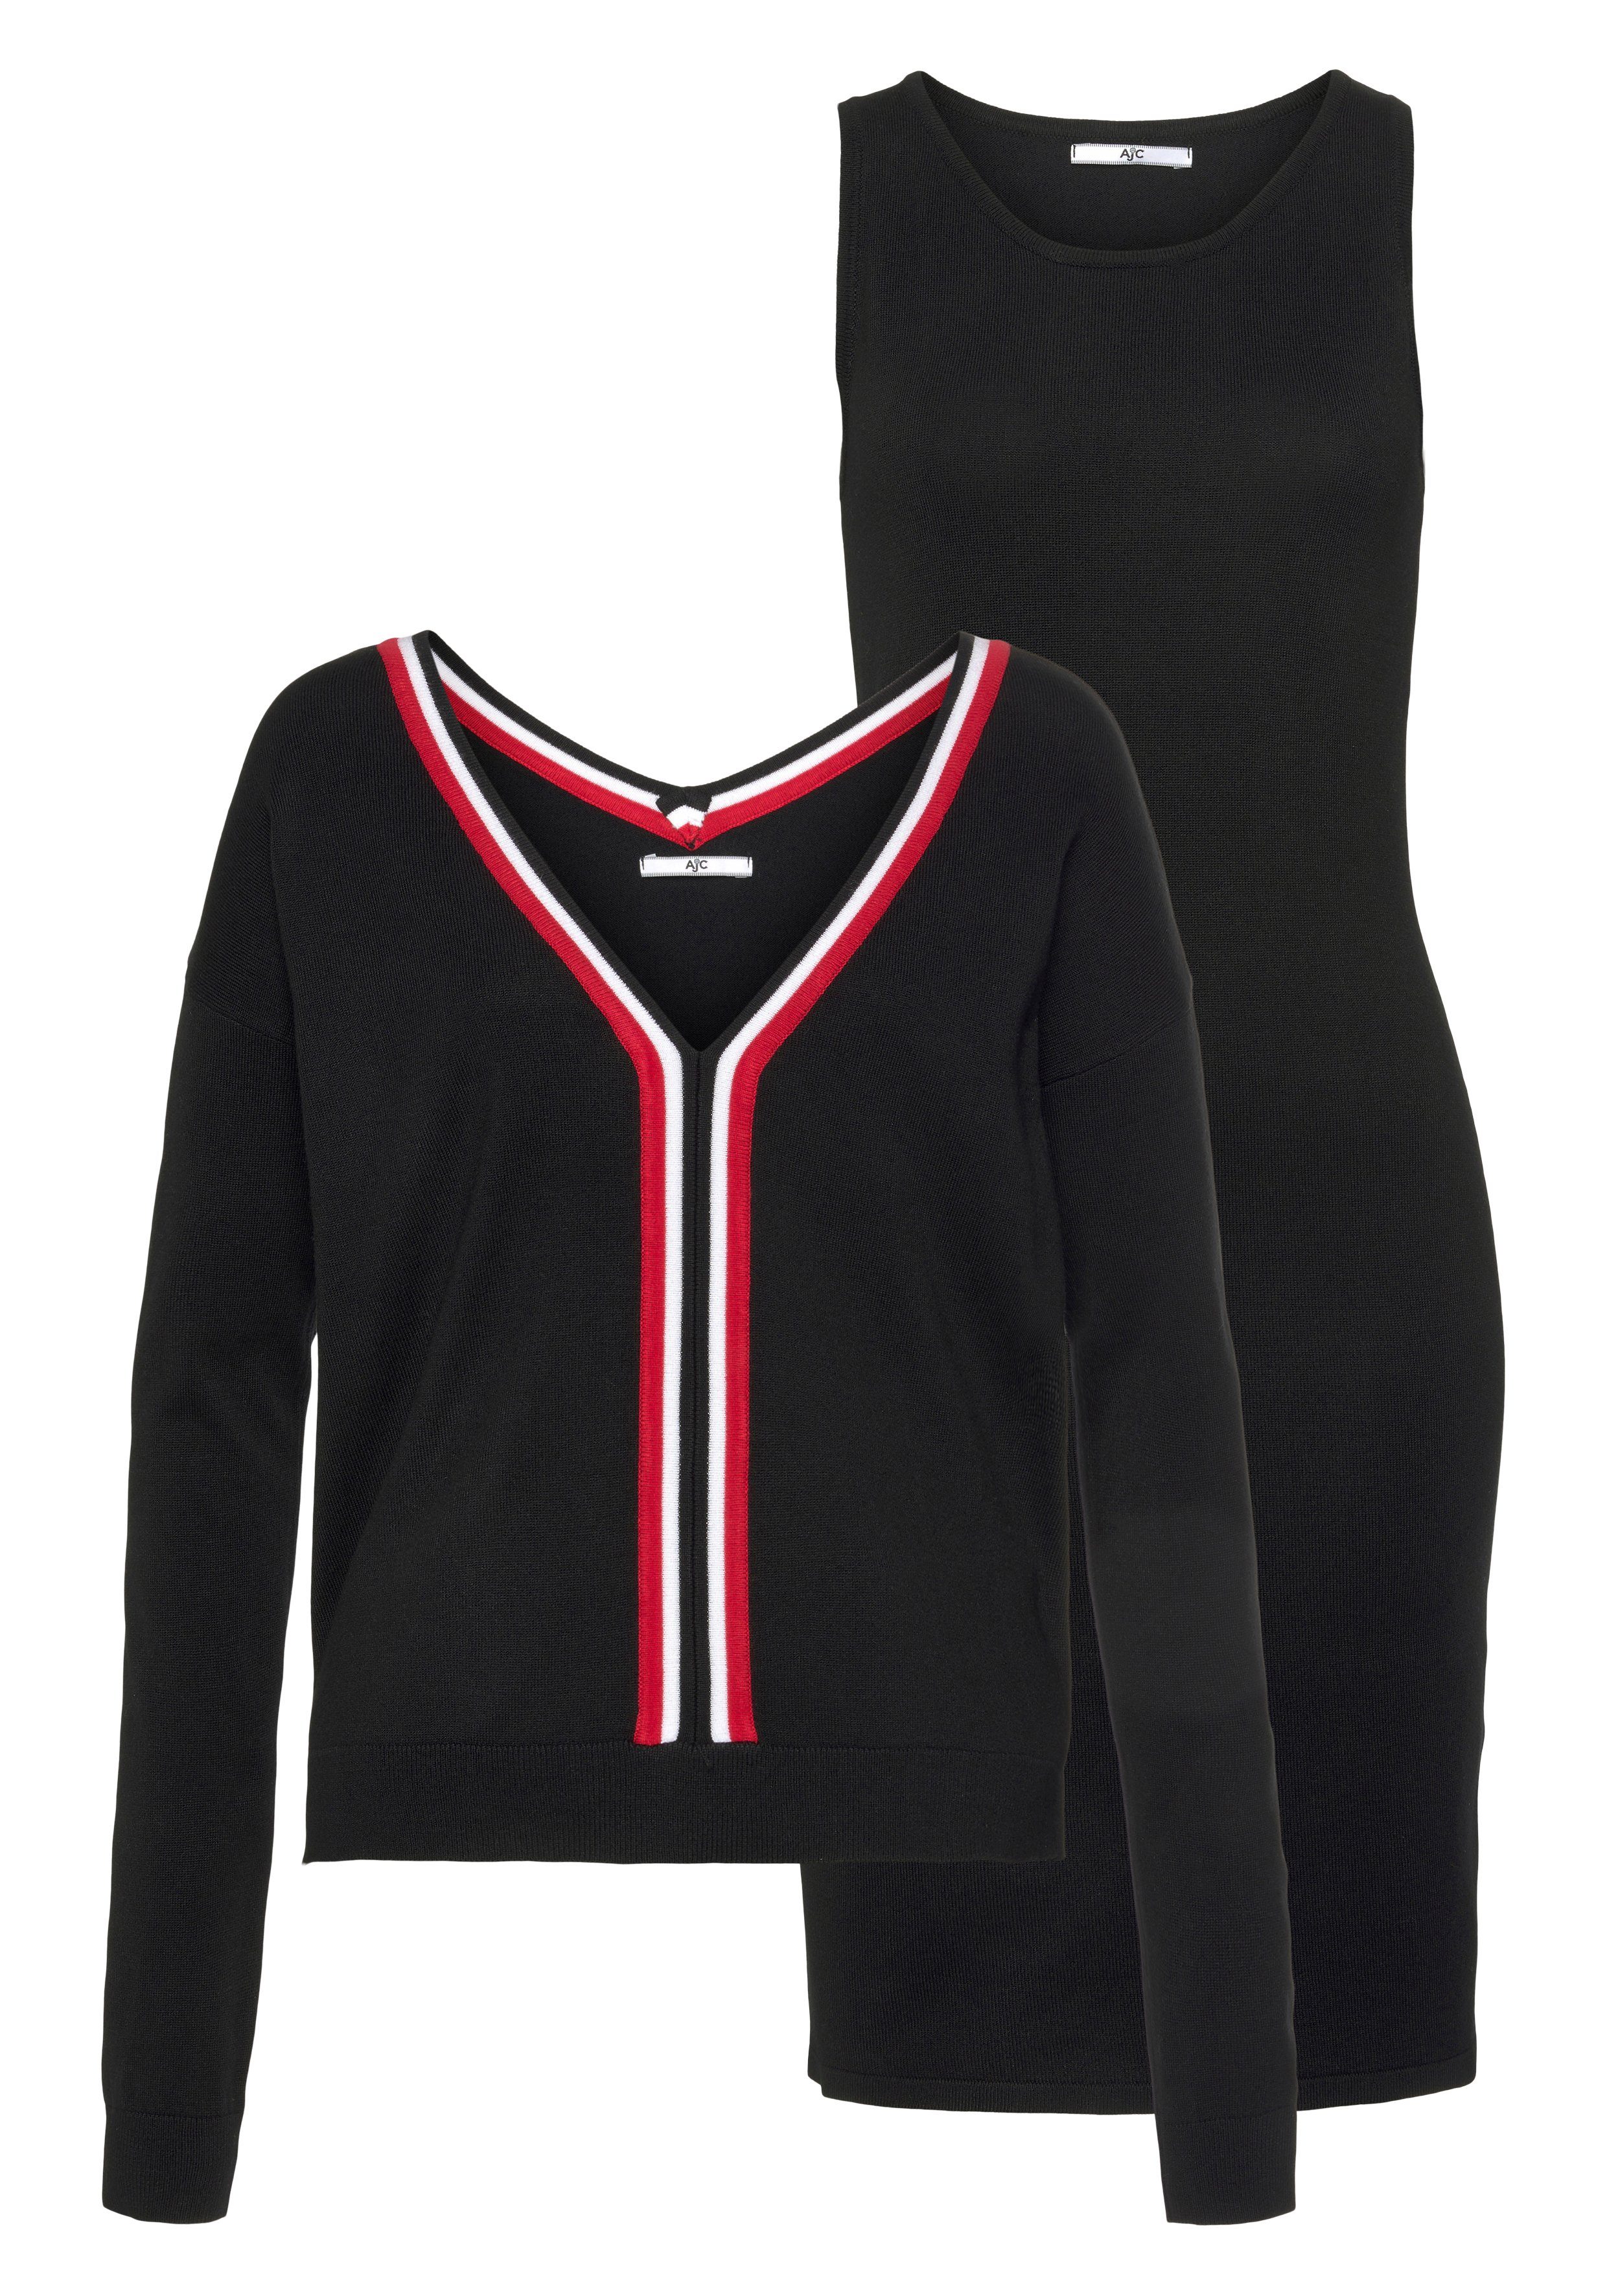 Strickkleid und Kleid Pullover AJC (Set) schwarz-rot